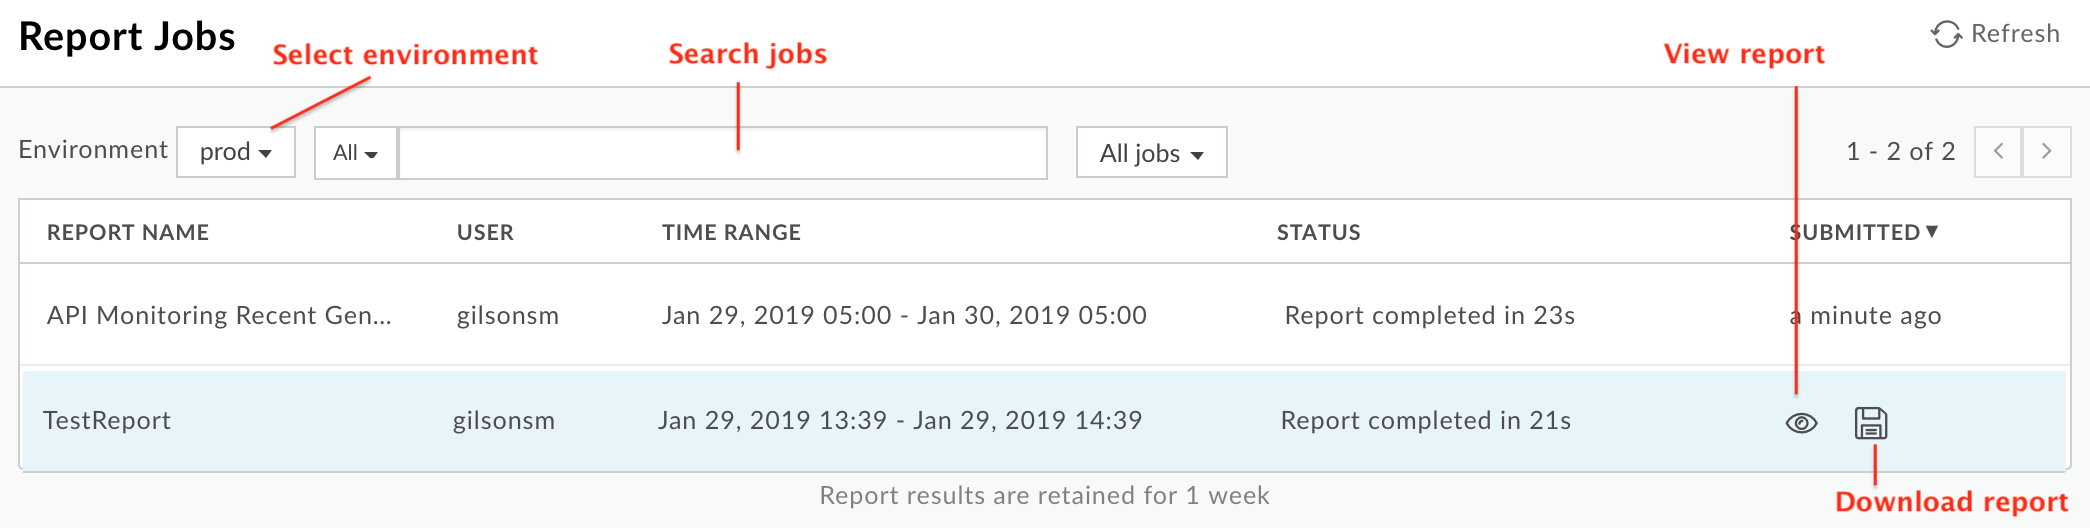 Report jobs